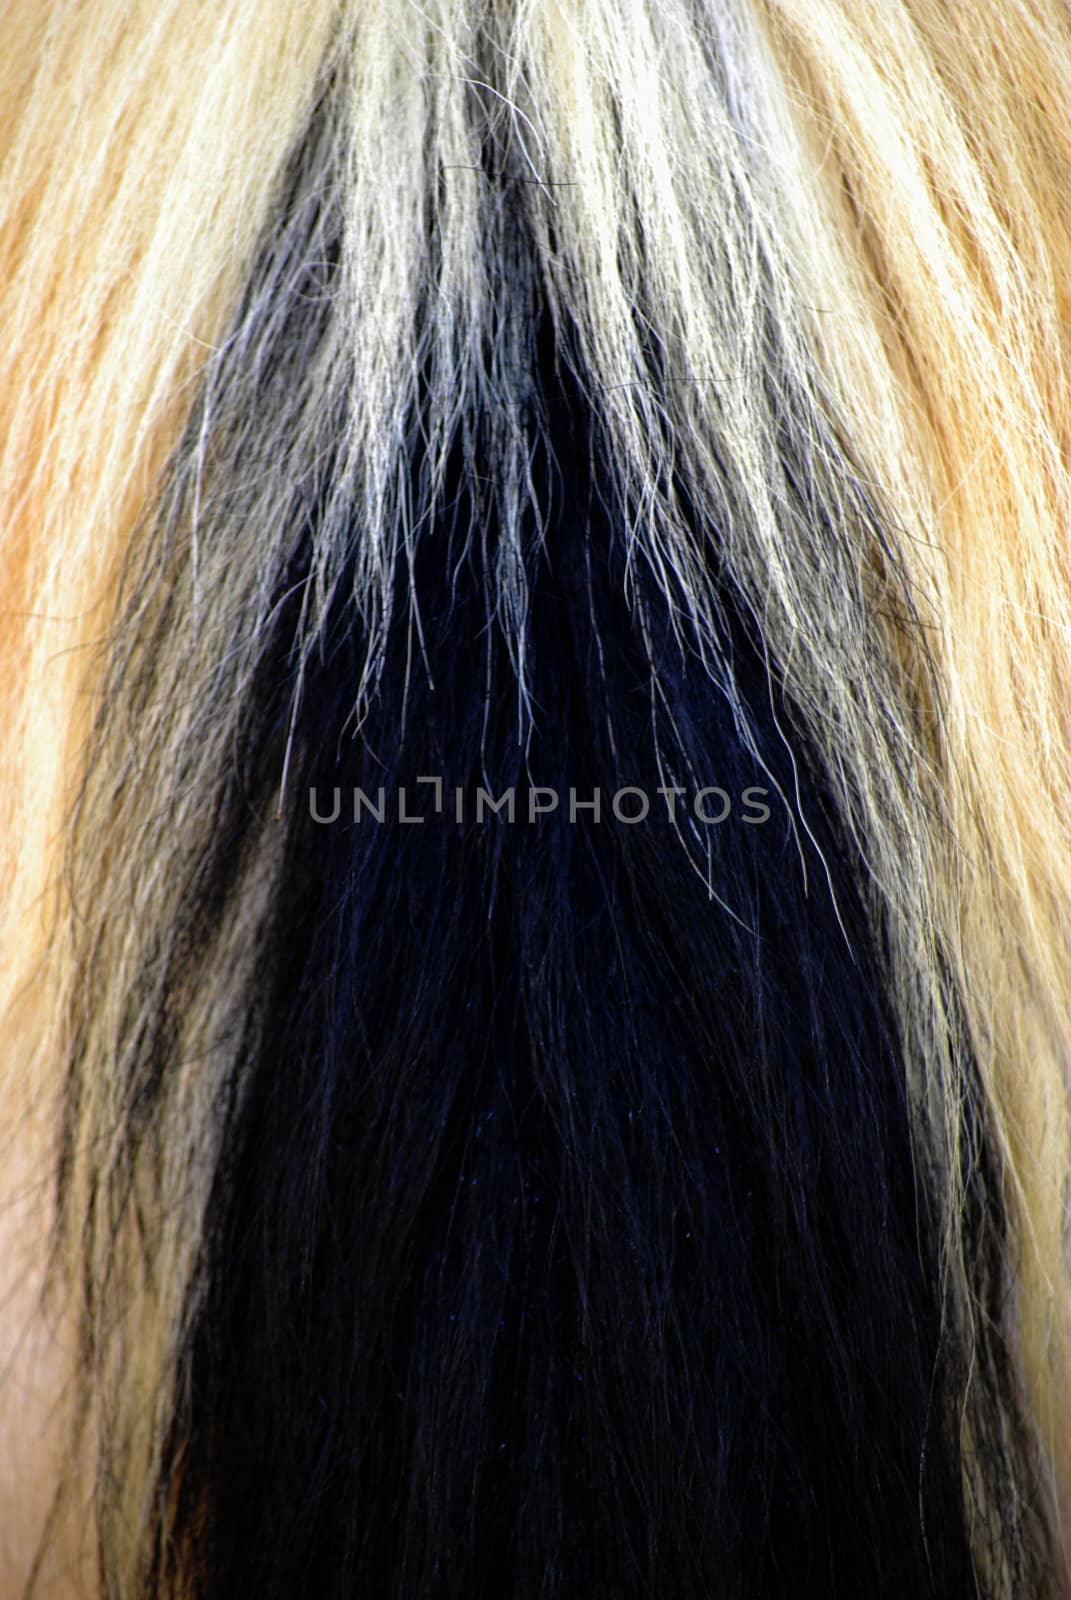 Horse hair abstract. by oscarcwilliams